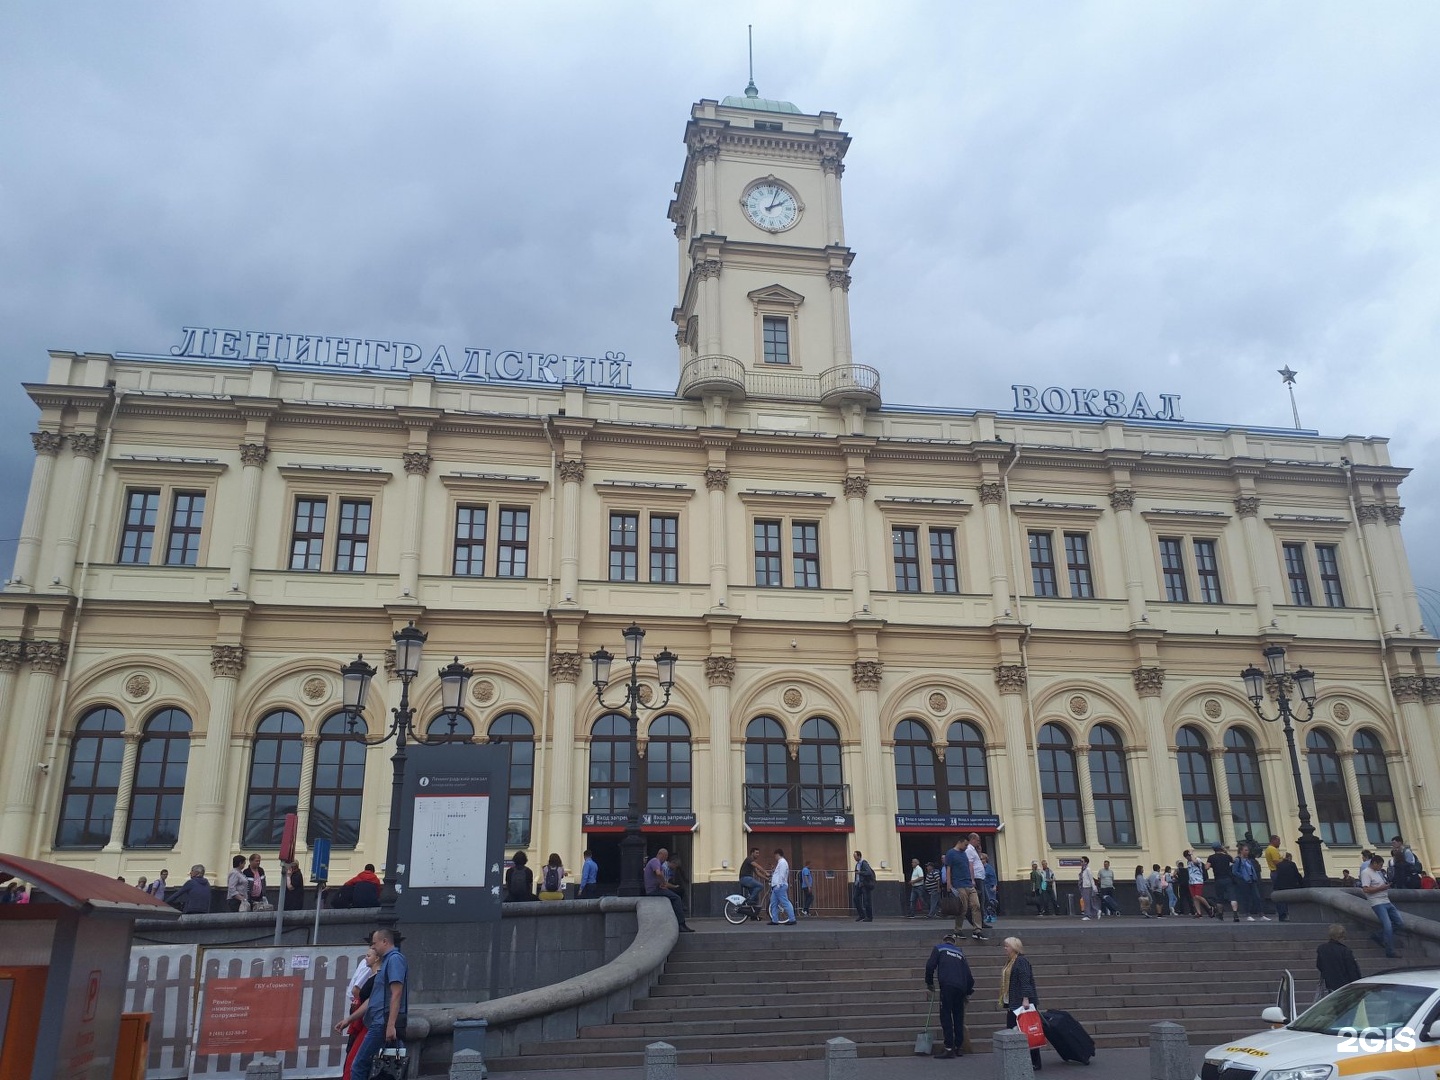 ленинградского вокзала в москве